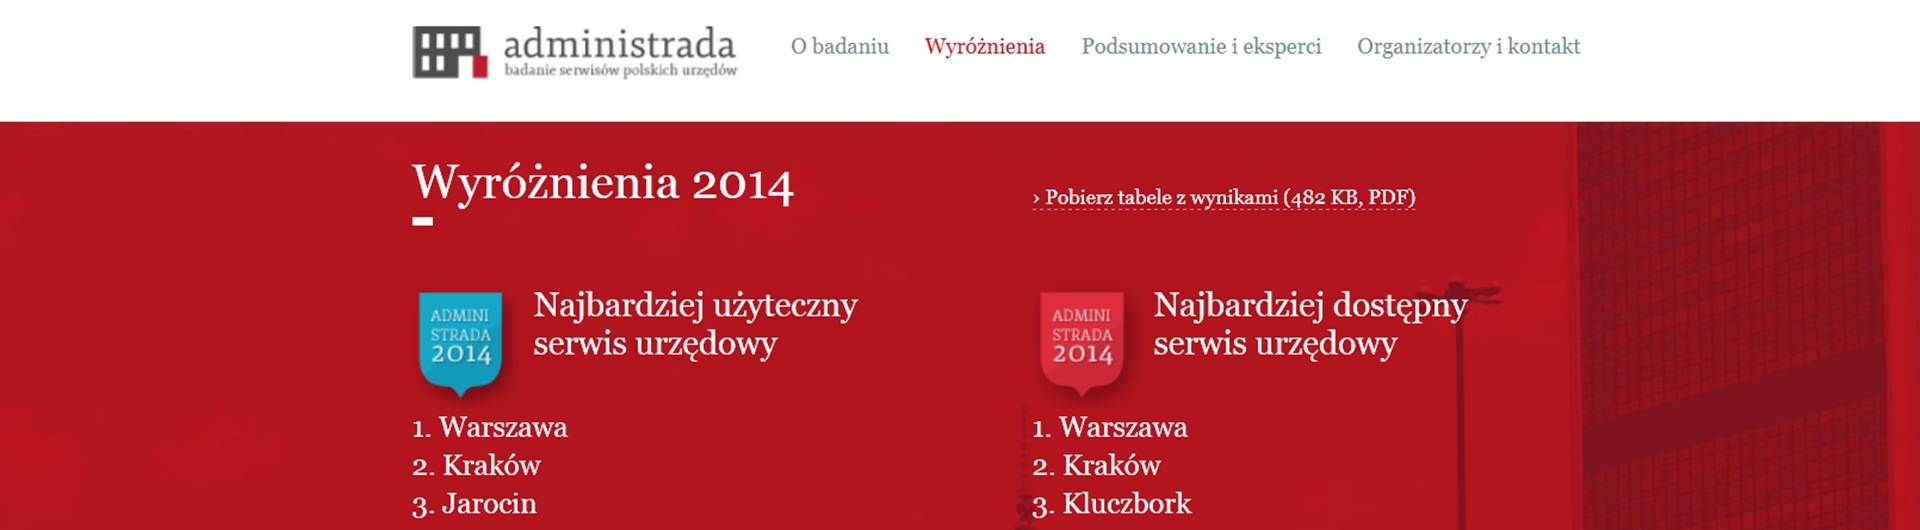 E-urzędy po polsku. Co wykazało badanie Administrada?